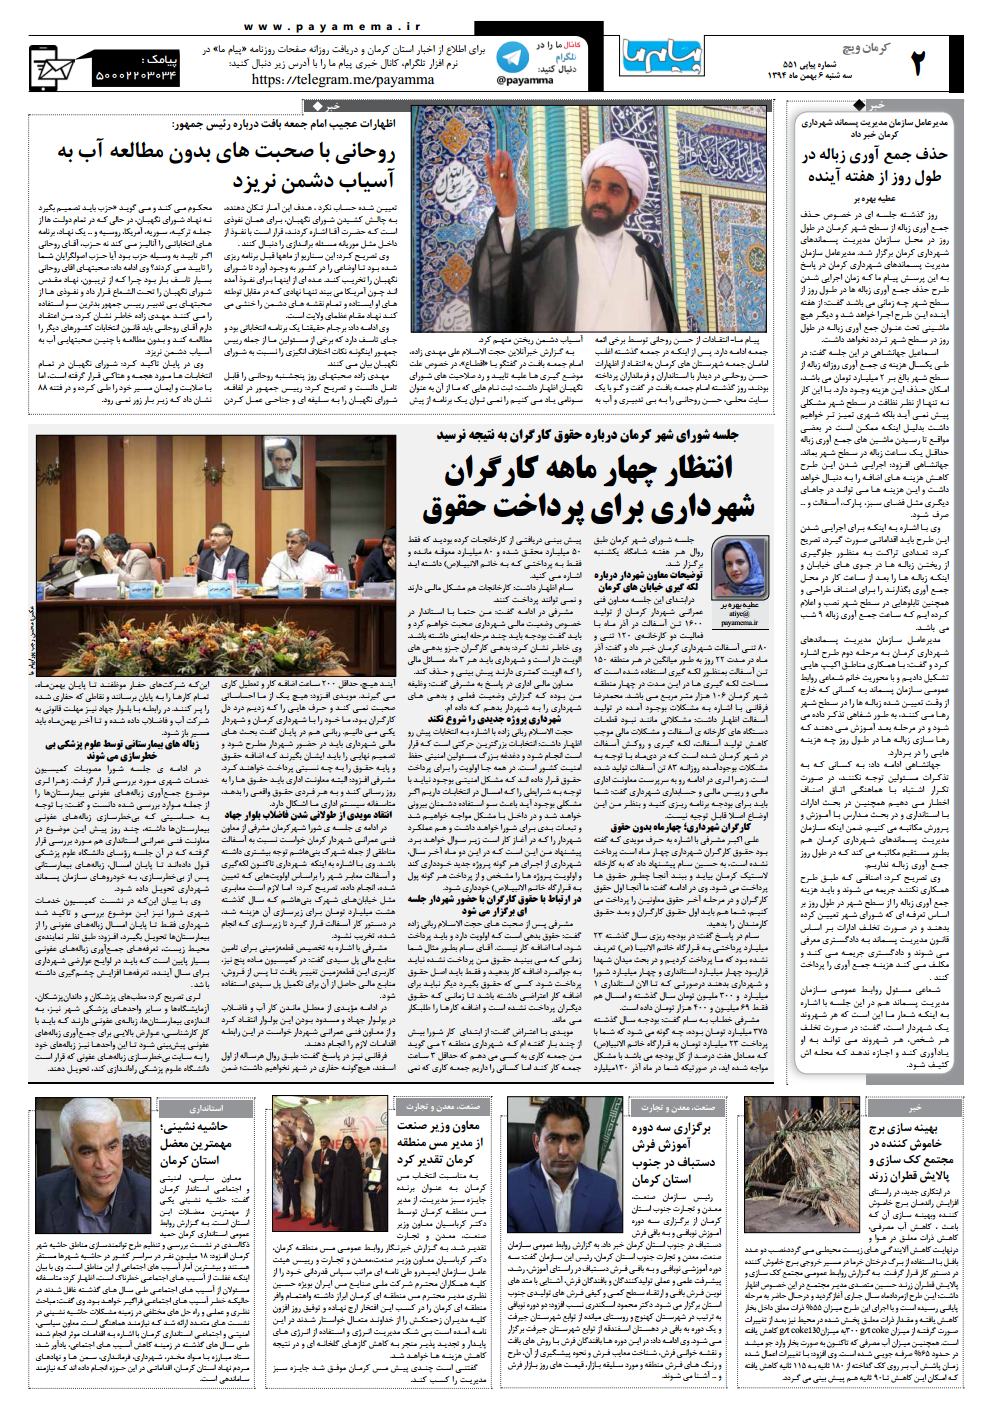 صفحه کرمان ویچ شماره 551 روزنامه پیام ما